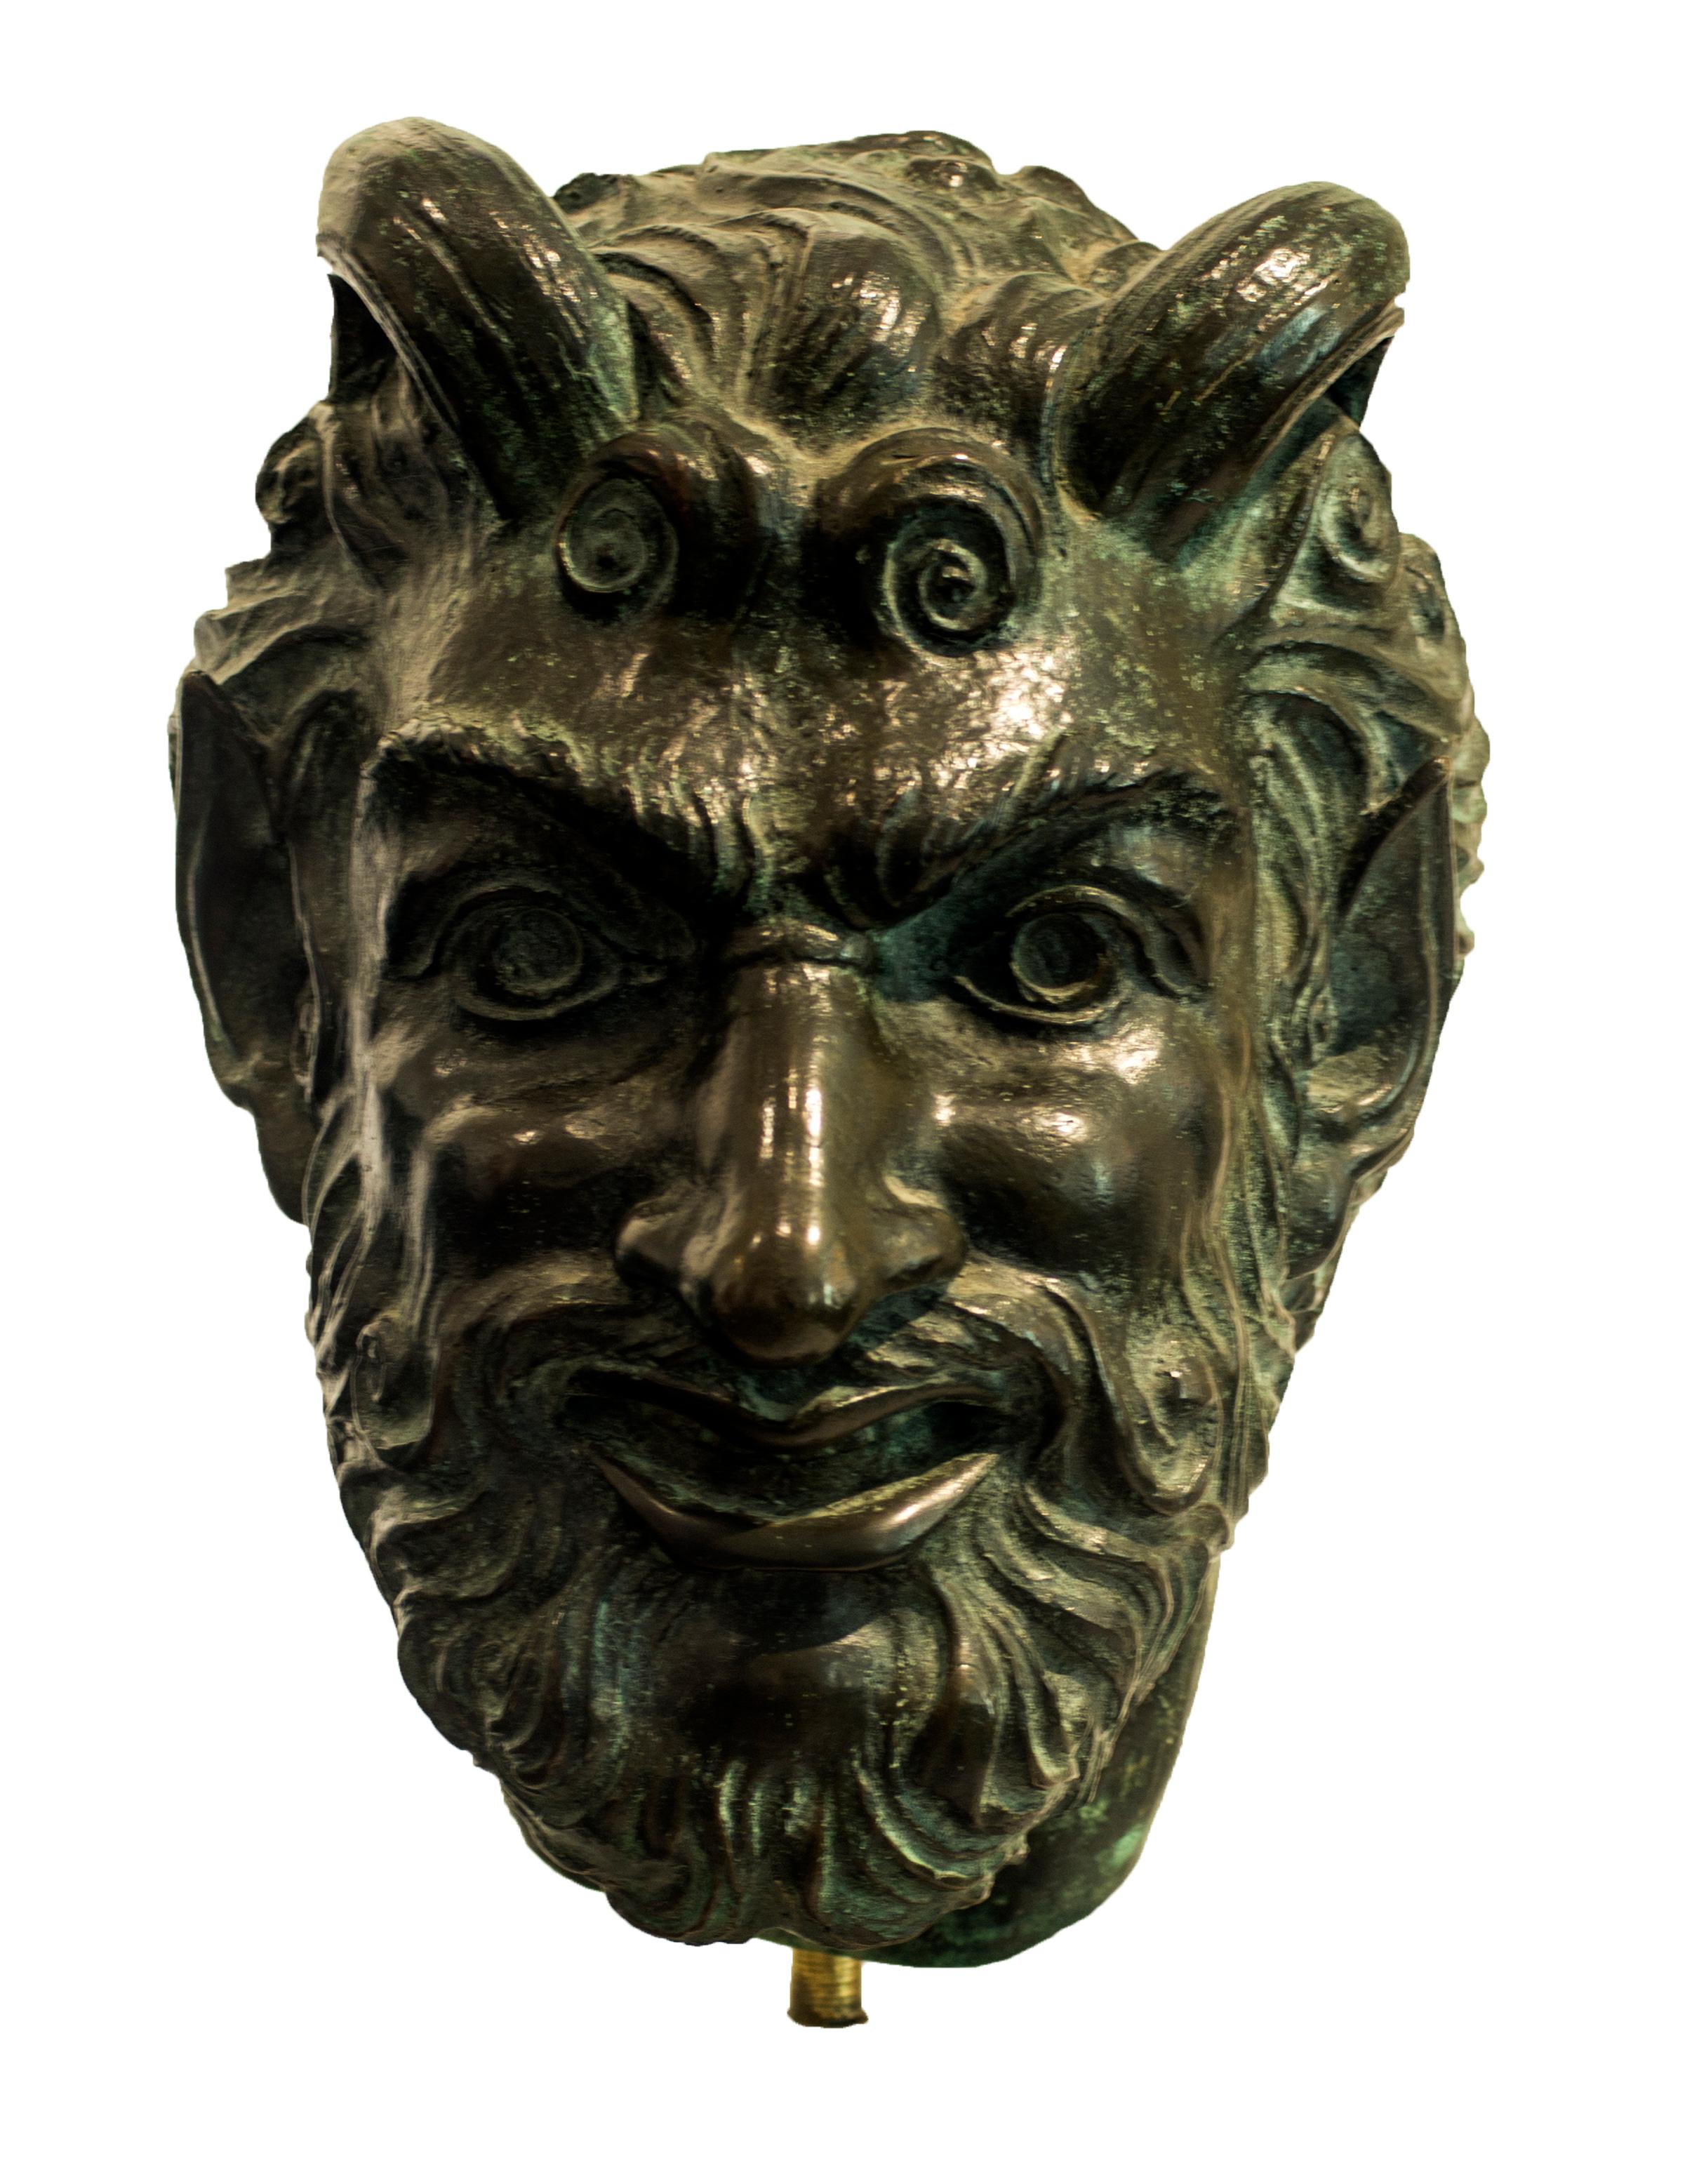 Kopfskulptur aus Bronze von Giulio Aristide Sartorio, einem italienischen Maler, Bildhauer und Filmregisseur aus Rom.

Sartorio besuchte das Institut der Schönen Künste in Rom und präsentierte 1883 ein symbolistisches Werk auf der Internationalen